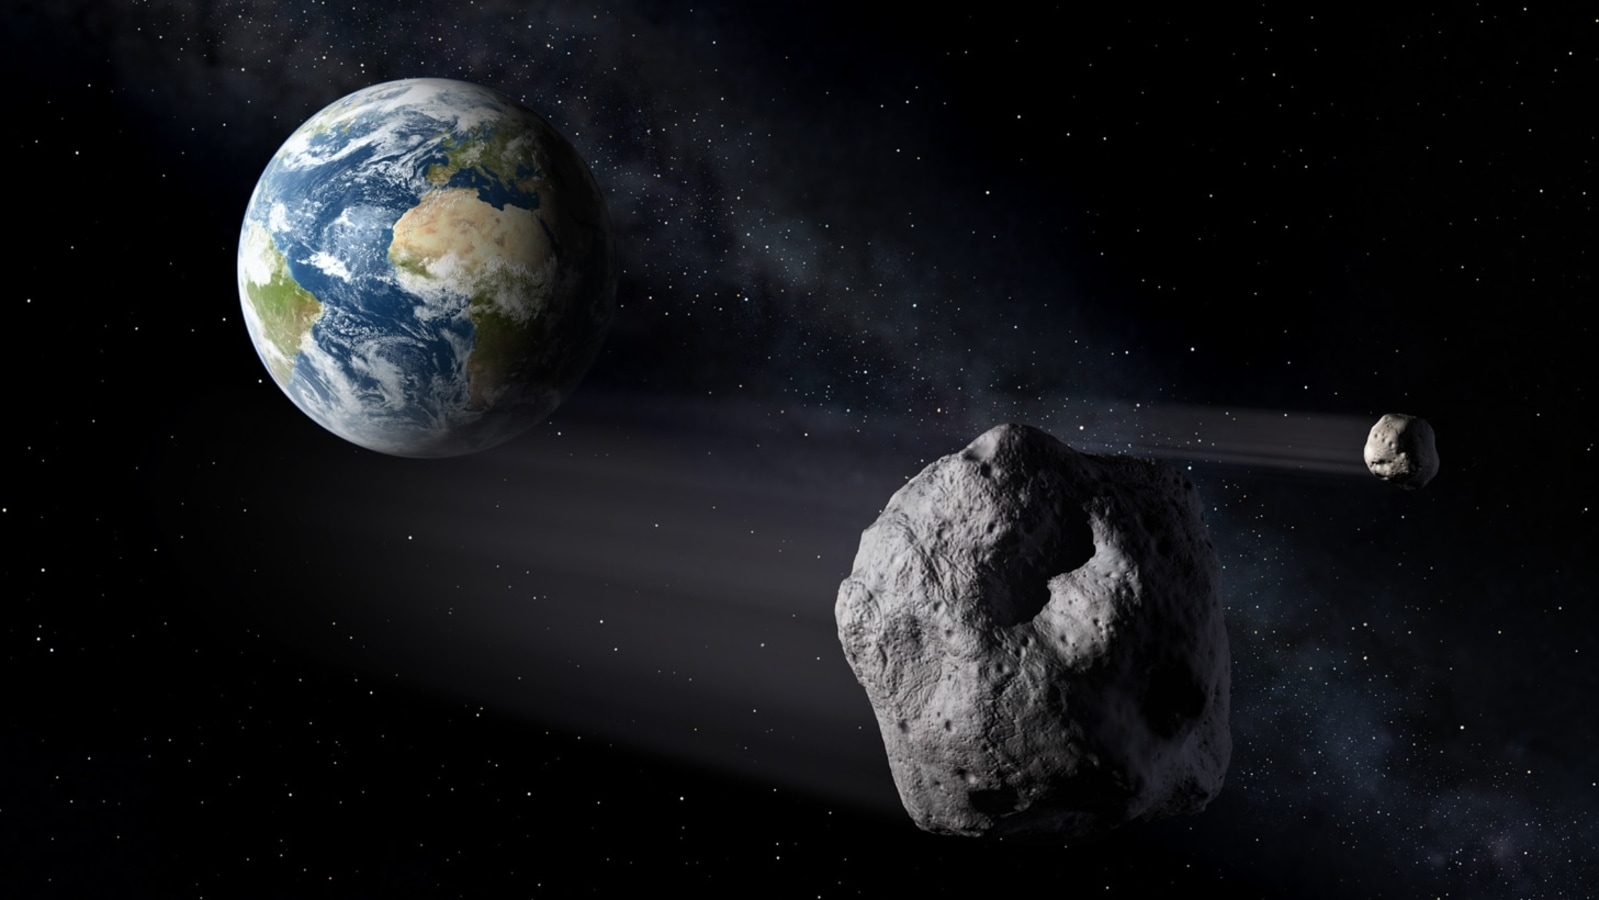 Deze angstaanjagende asteroïde botst bijna met de aarde, hij kwam slechts 24 uur geleden gevaarlijk dichtbij